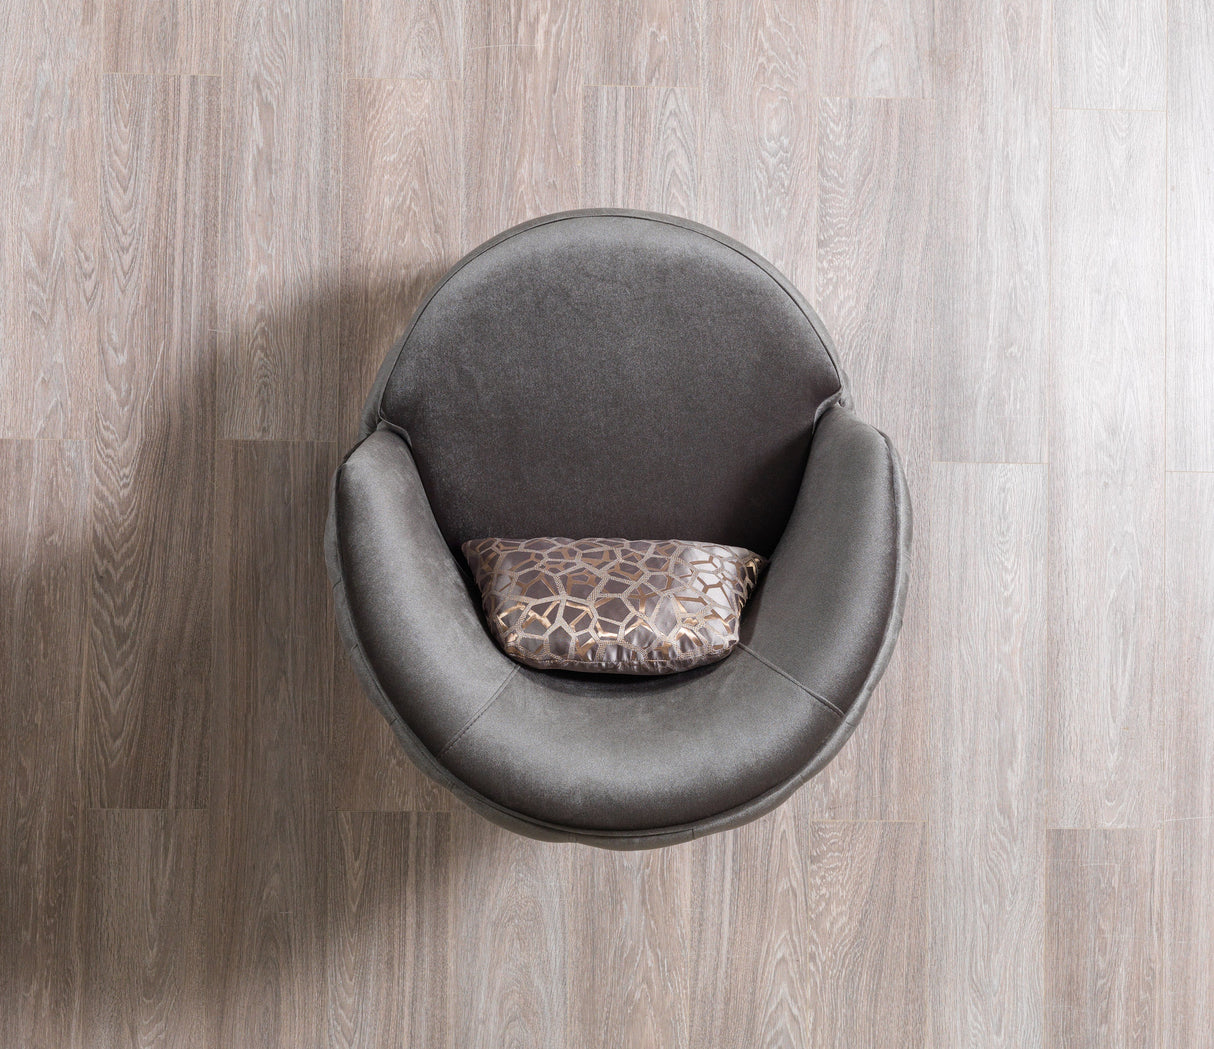 Lupino Gray Velvet Chair - LUPINOGRAY-CHAIR - 